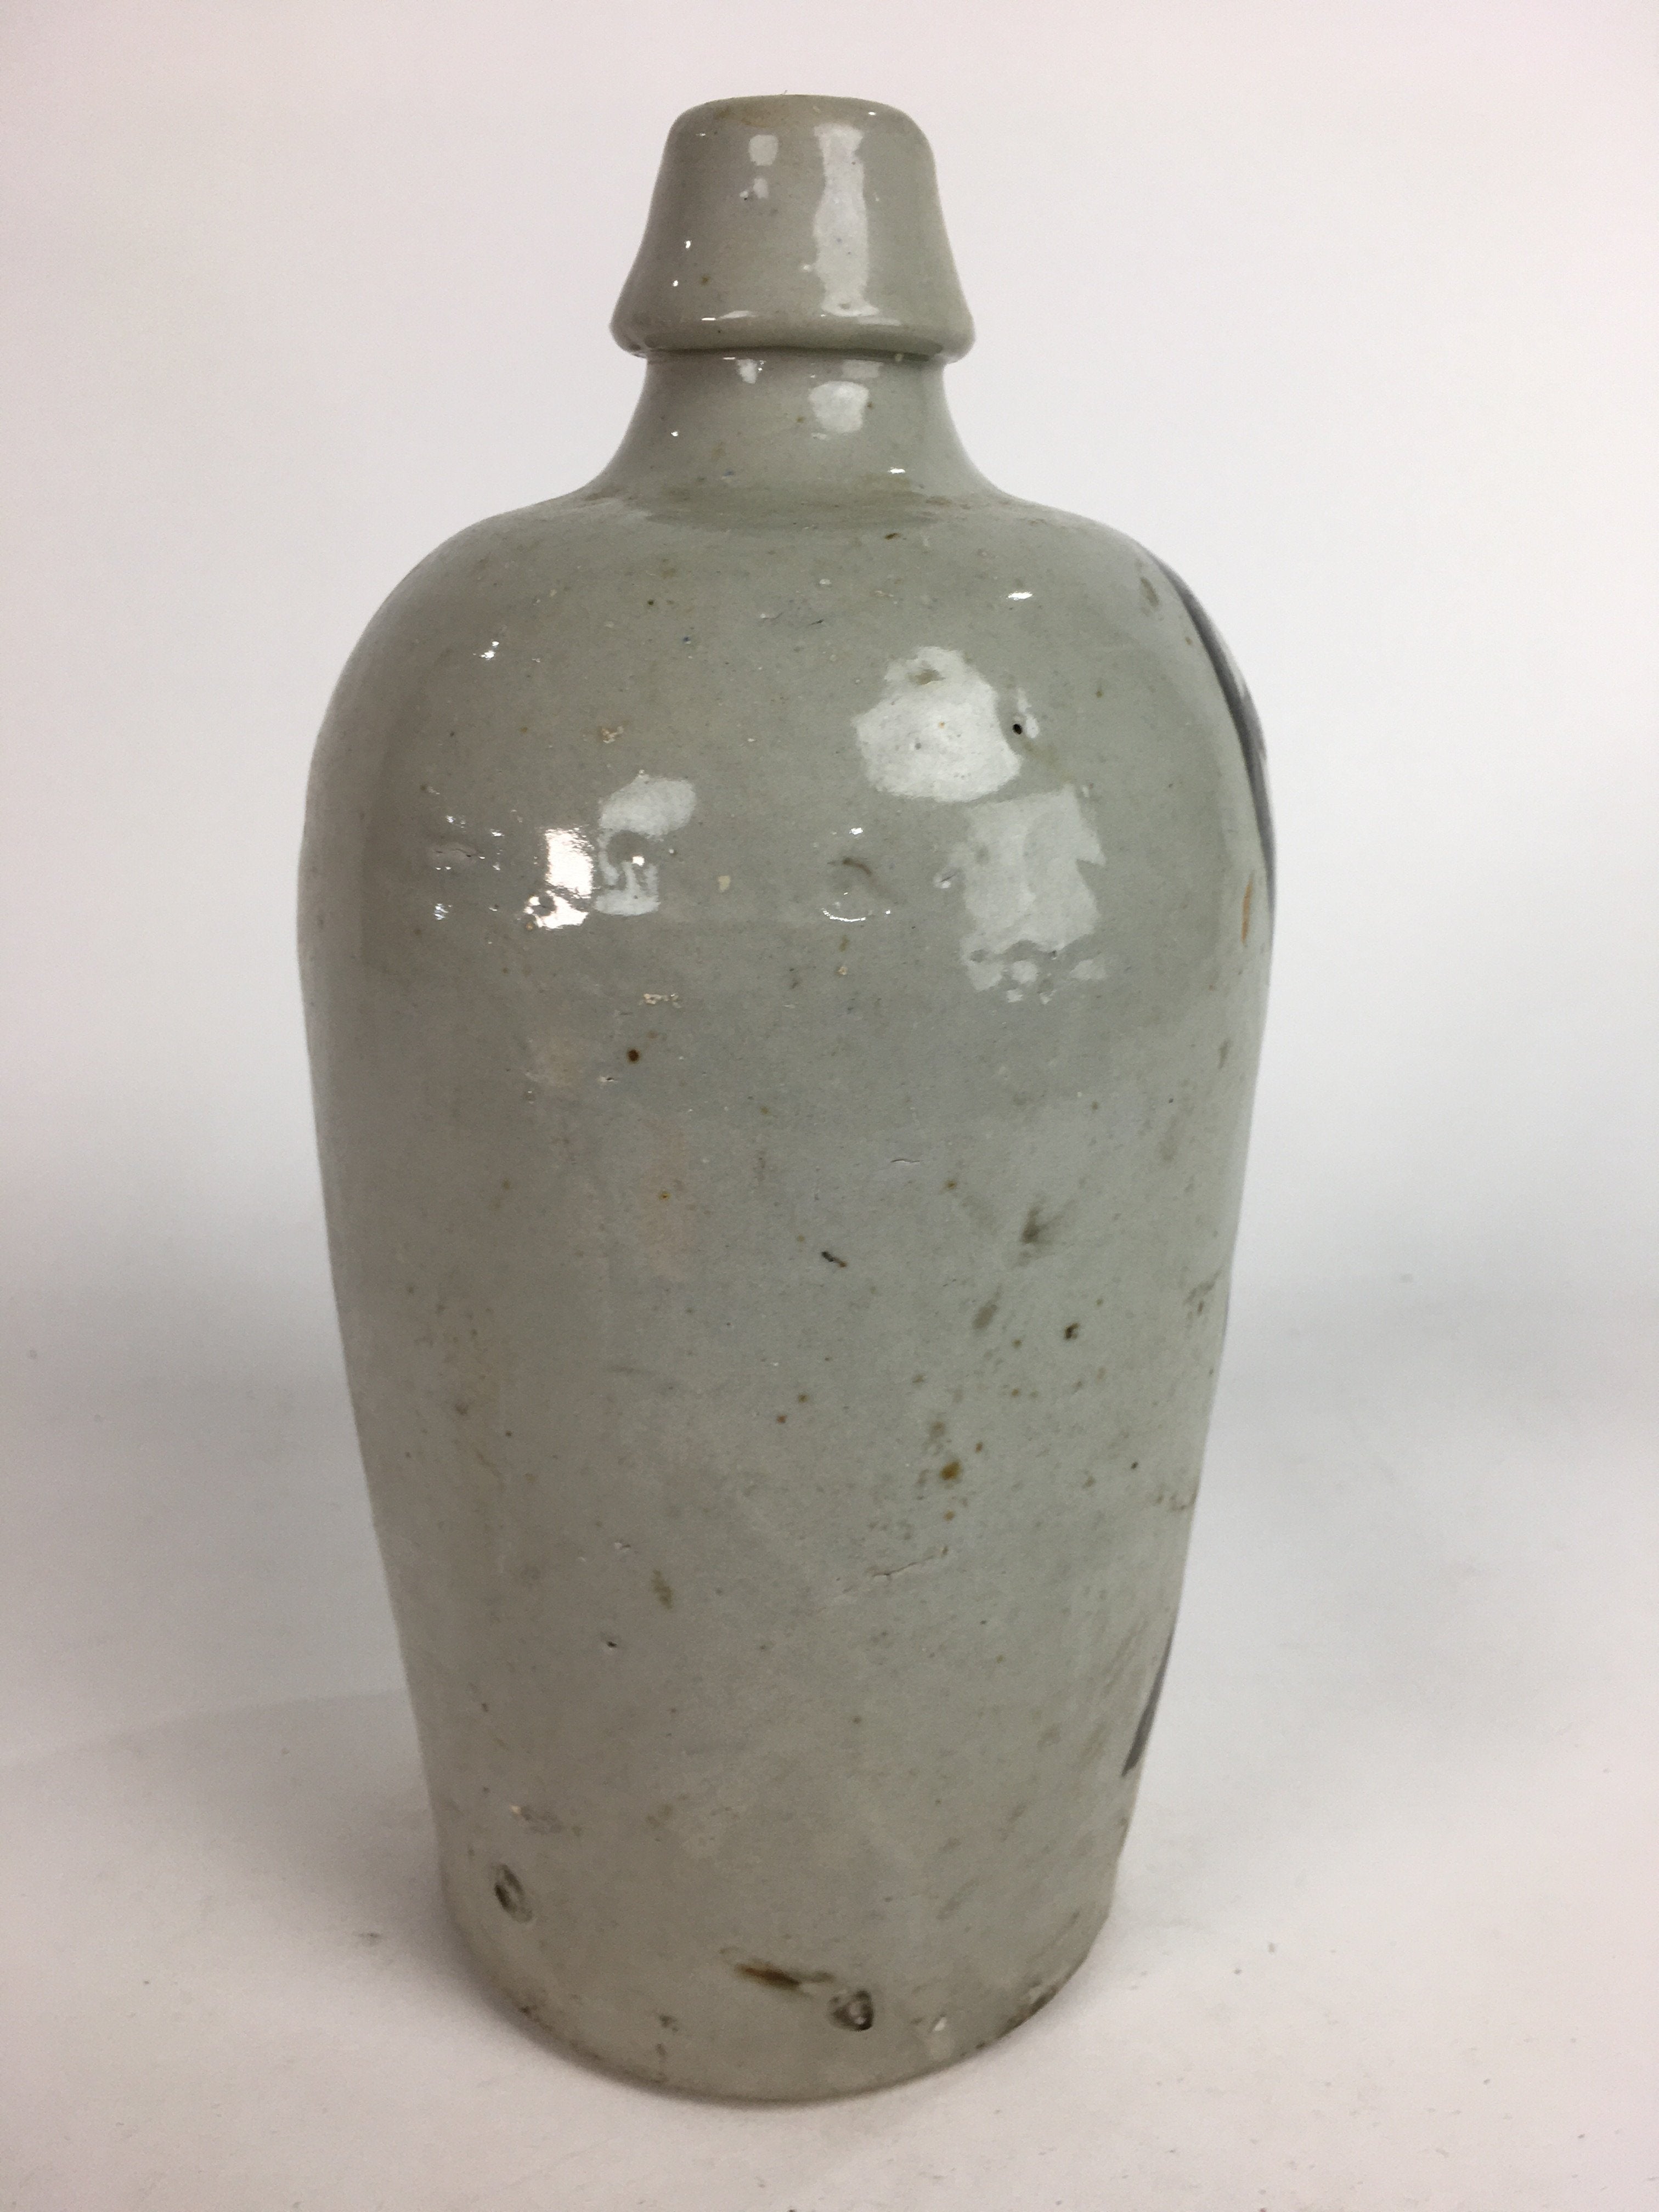 Japanese Ceramic Sake Bottle Tokkuri Vtg Pottery Gray Hand-Written Kanji TS274